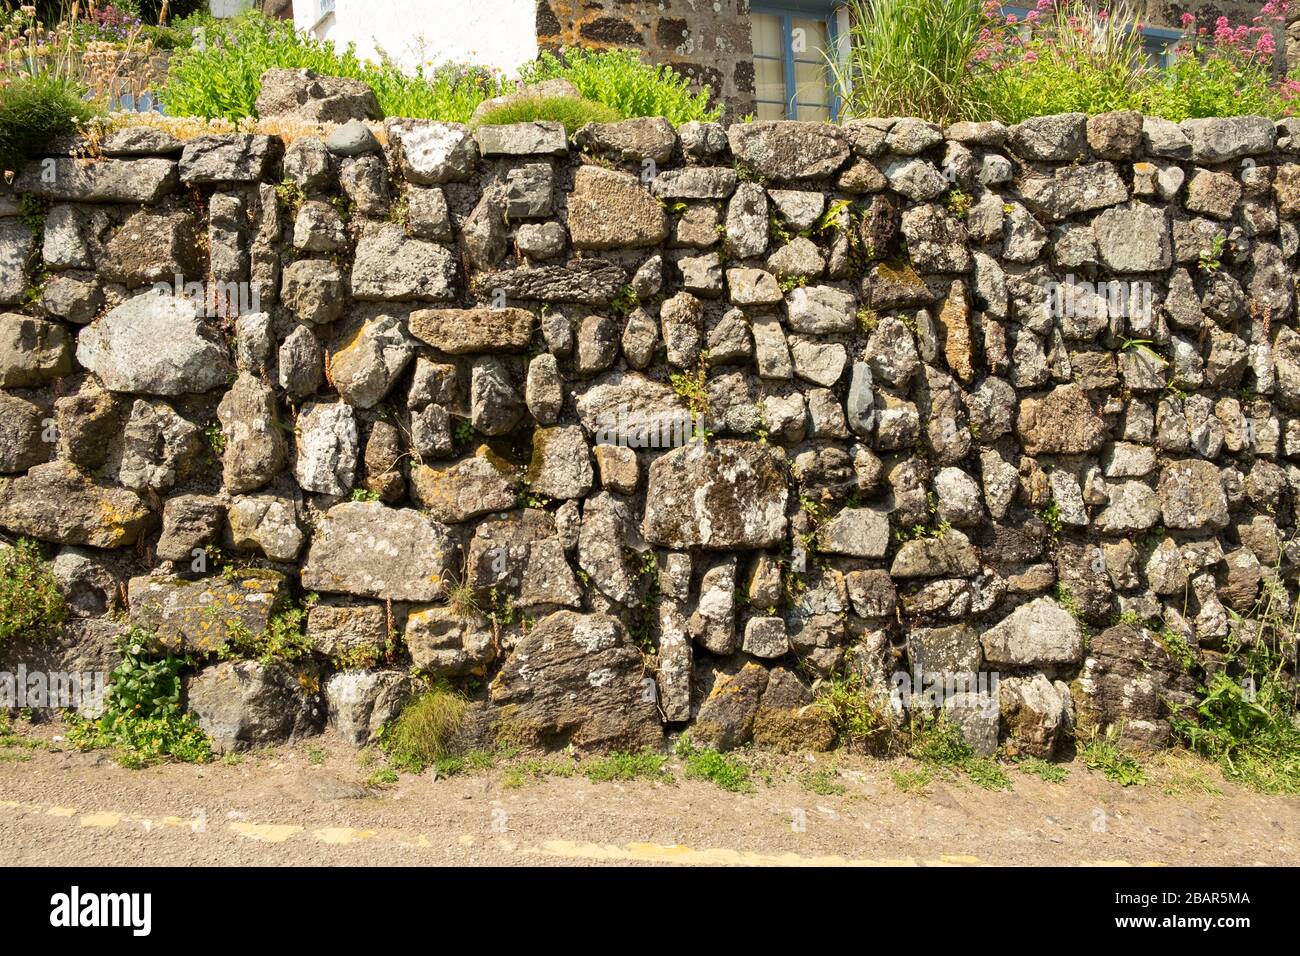 Alte steinerne Stützmauer mit unterschiedlich geformten Steinen, Flechten, Pflanzen und Moos, Cornwall, England Stockfoto